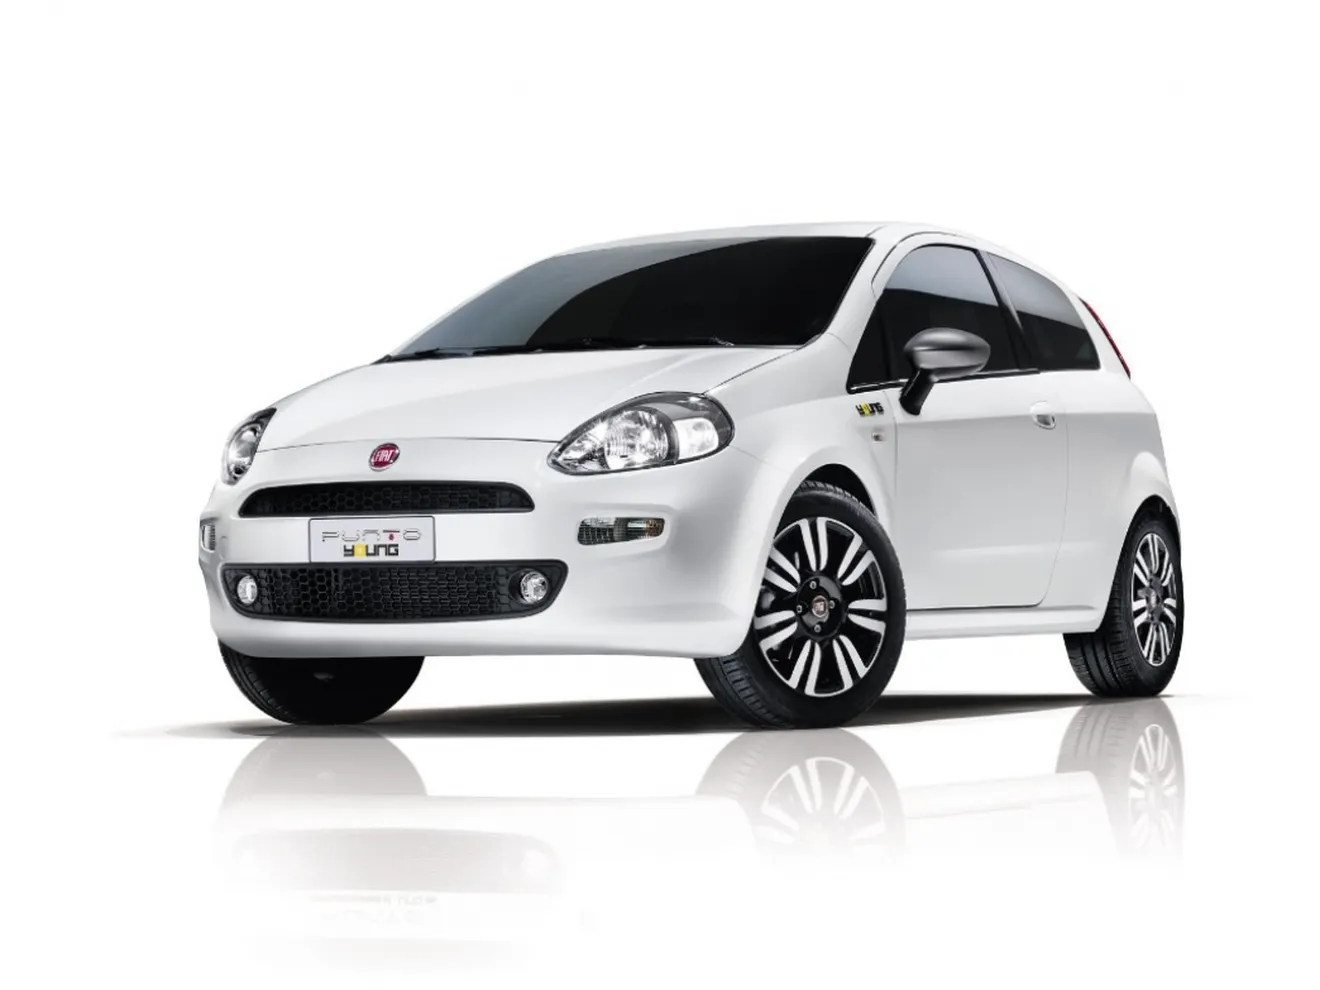 Fiat Punto Young 2014, a la venta desde 6.900 euros